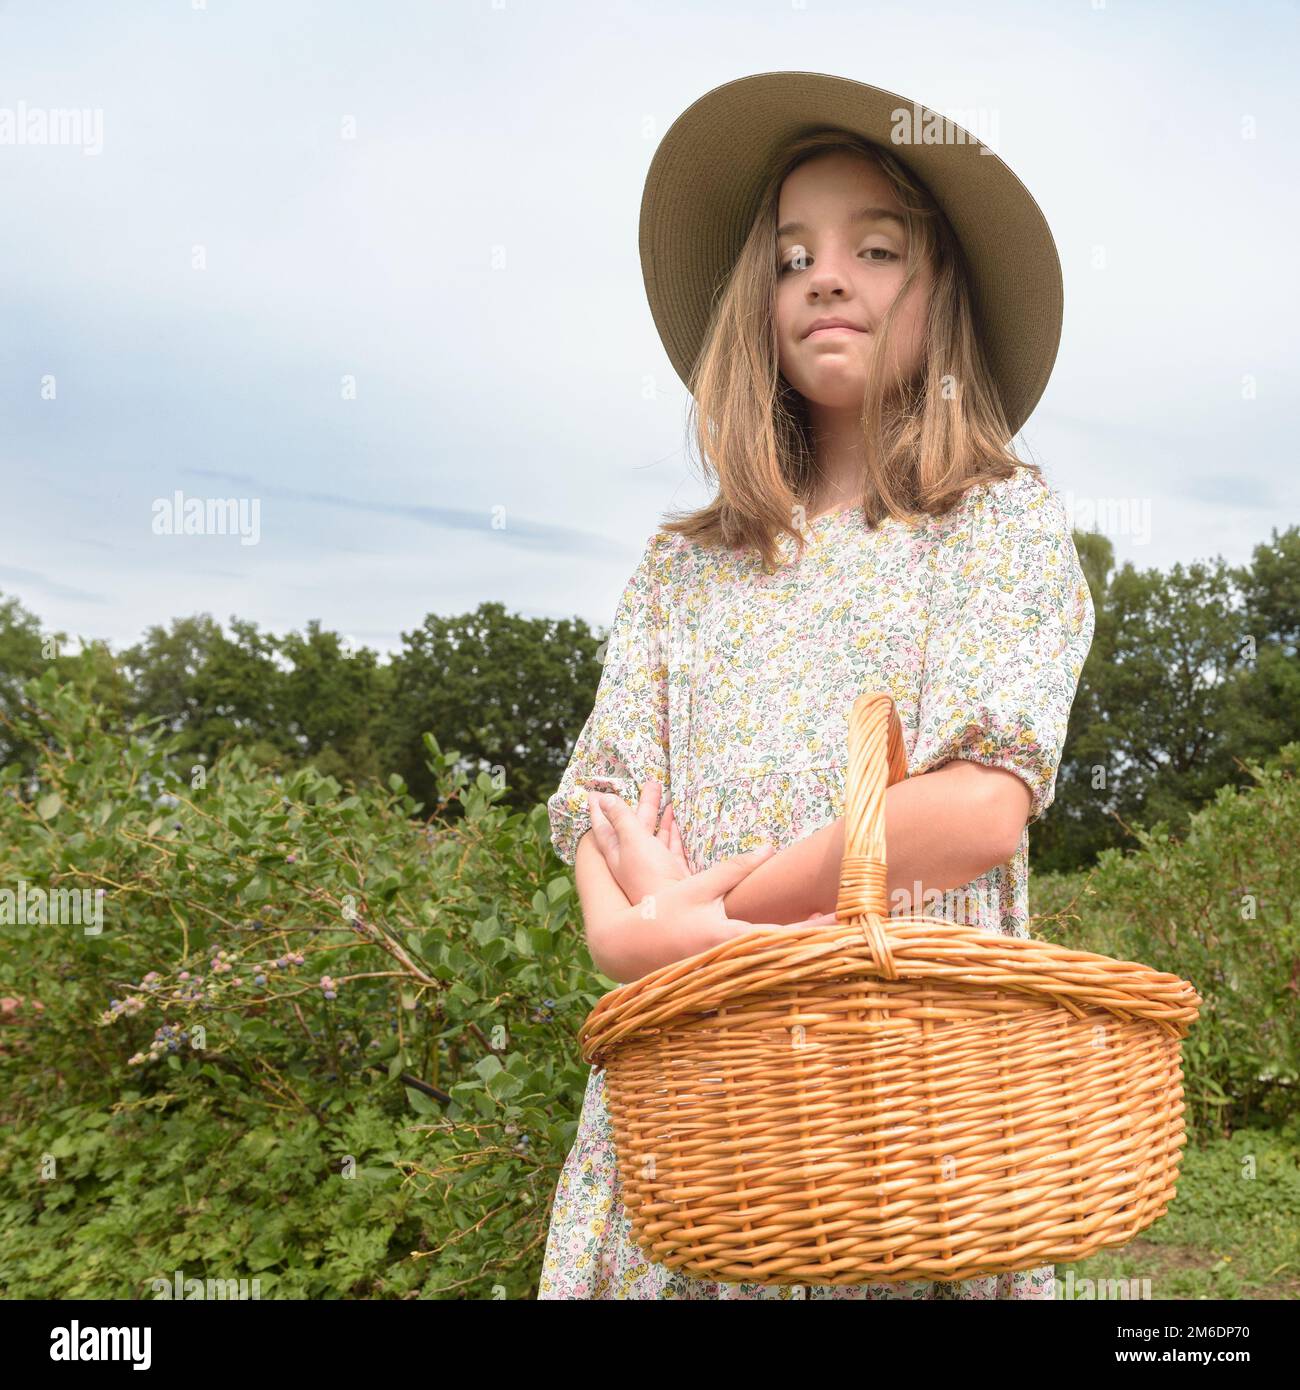 Routine de récolte. Adolescente dans un chapeau à large bord et un panier en osier sur le terrain Banque D'Images